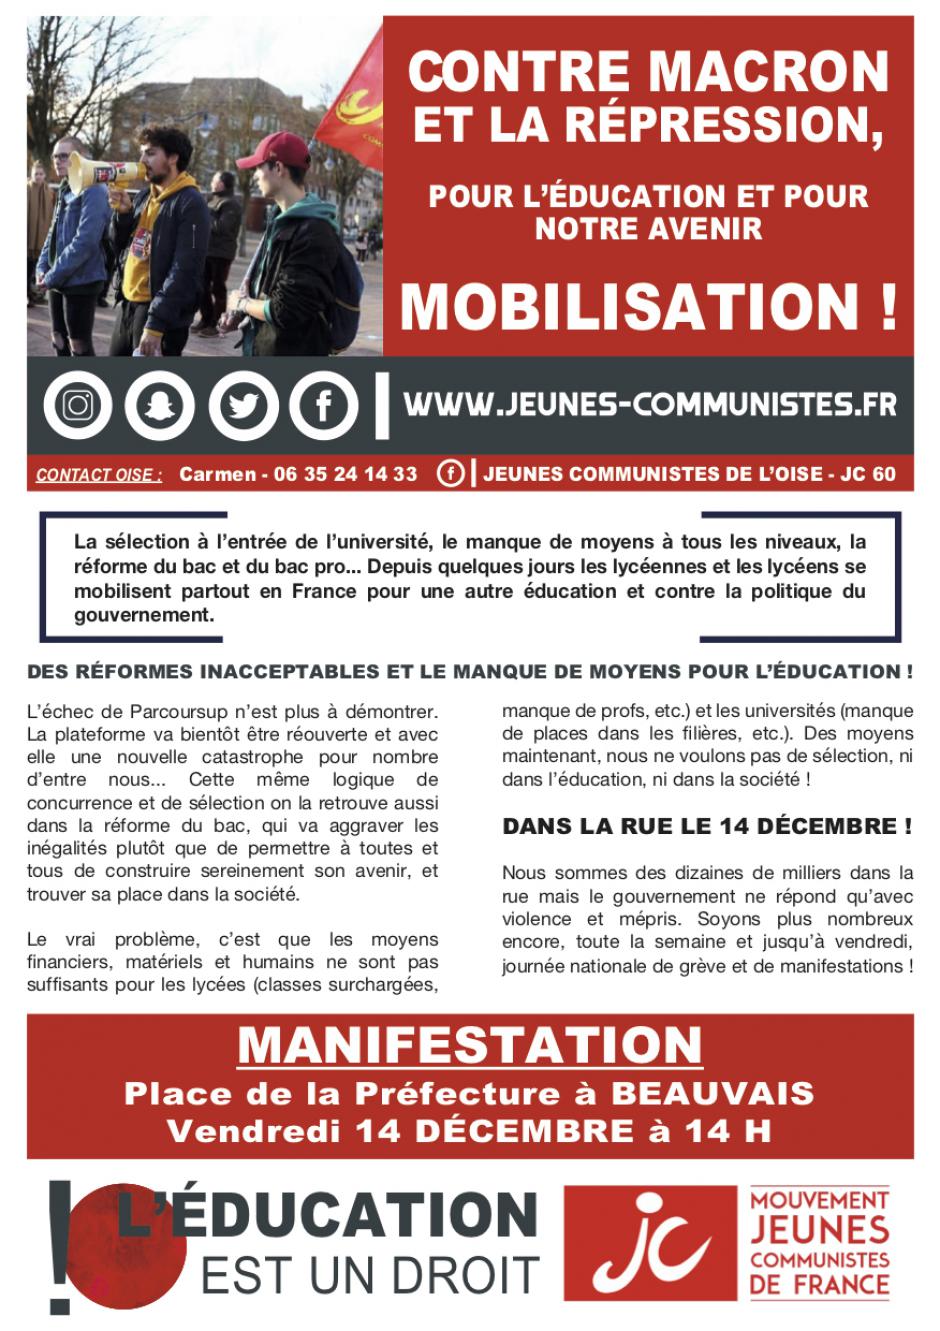 Flyer « Contre Macron et la répression, pour l'éducation et pour notre avenir, mobilisation ! » - JC 60, 14 décembre 2018 